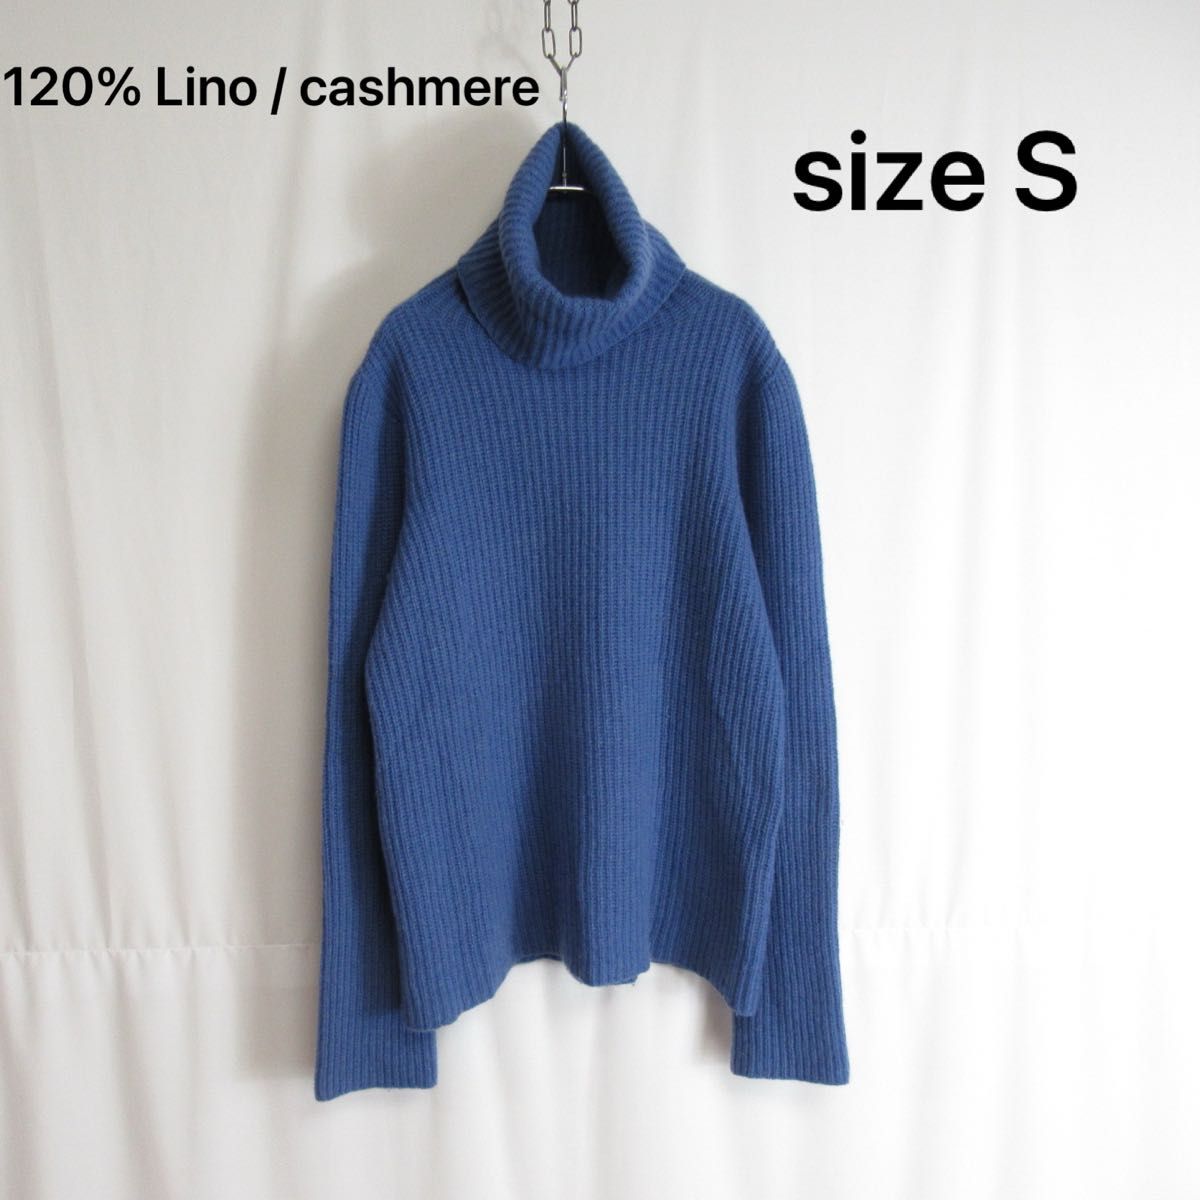 120% Lino / cashmere タートルネック ニット セーター Sサイズ レディース プルオーバー カシミヤ ウール